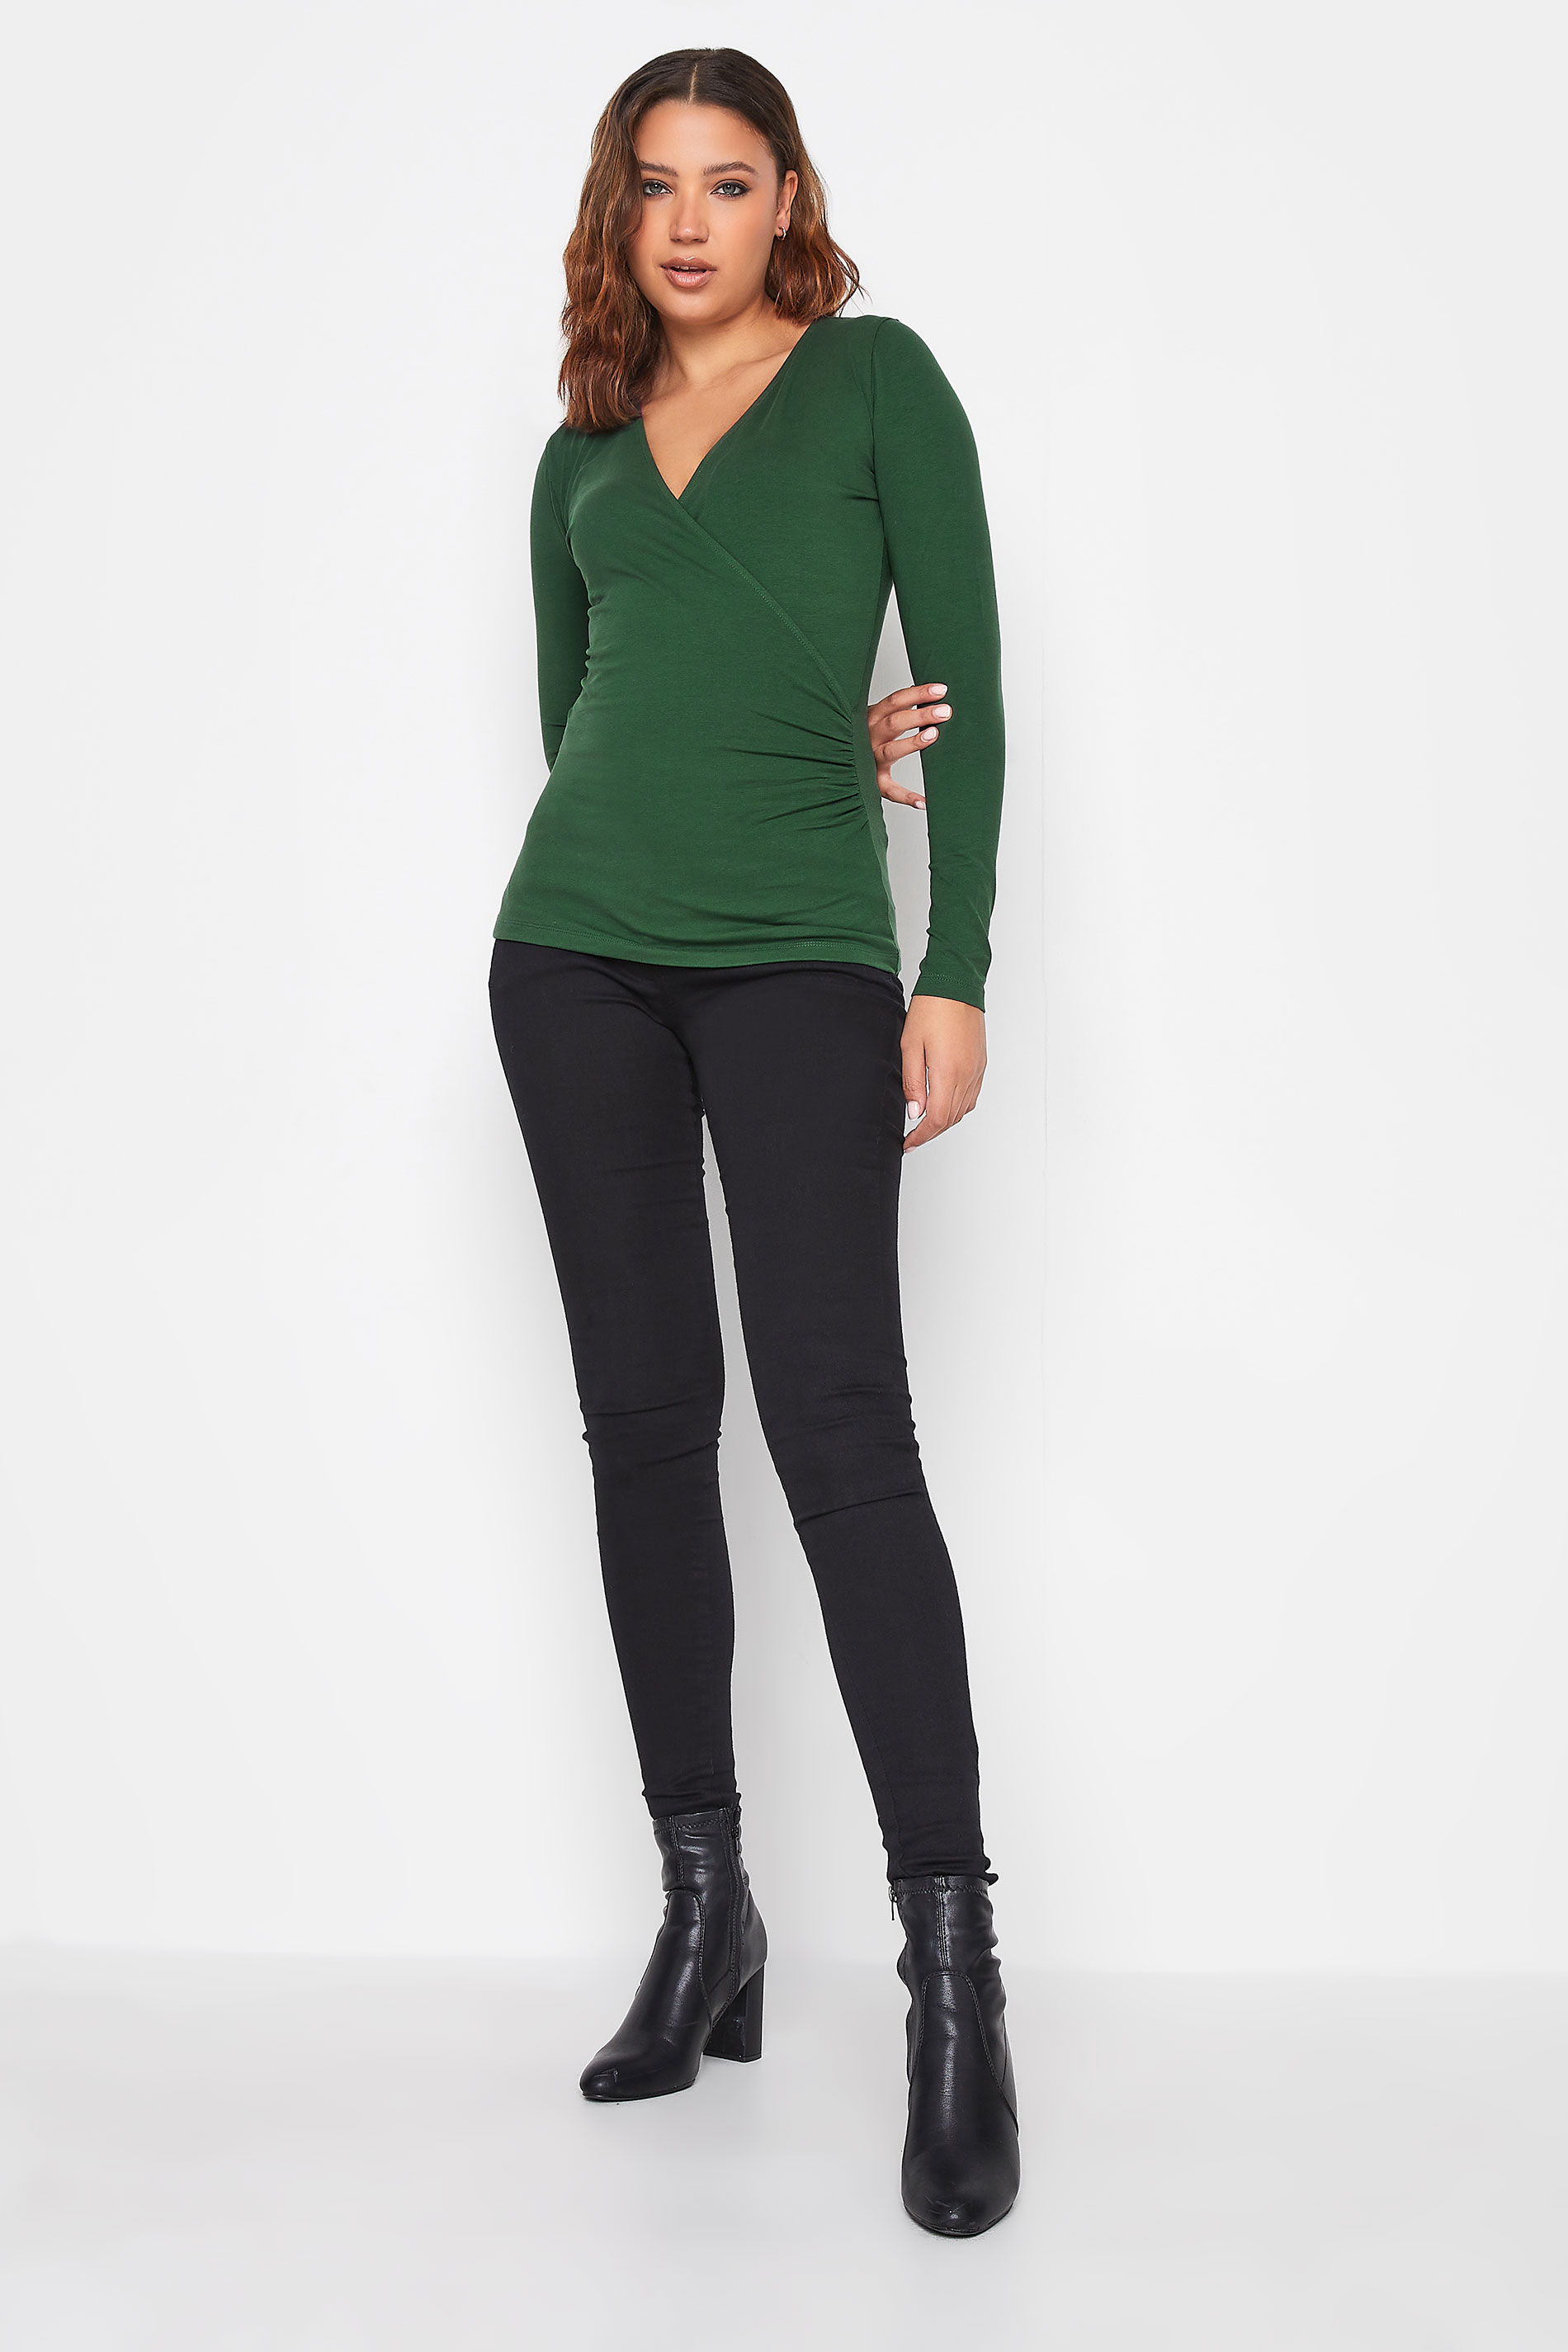 LTS Tall Women's Dark Green Jersey Wrap Top | Long Tall Sally 2